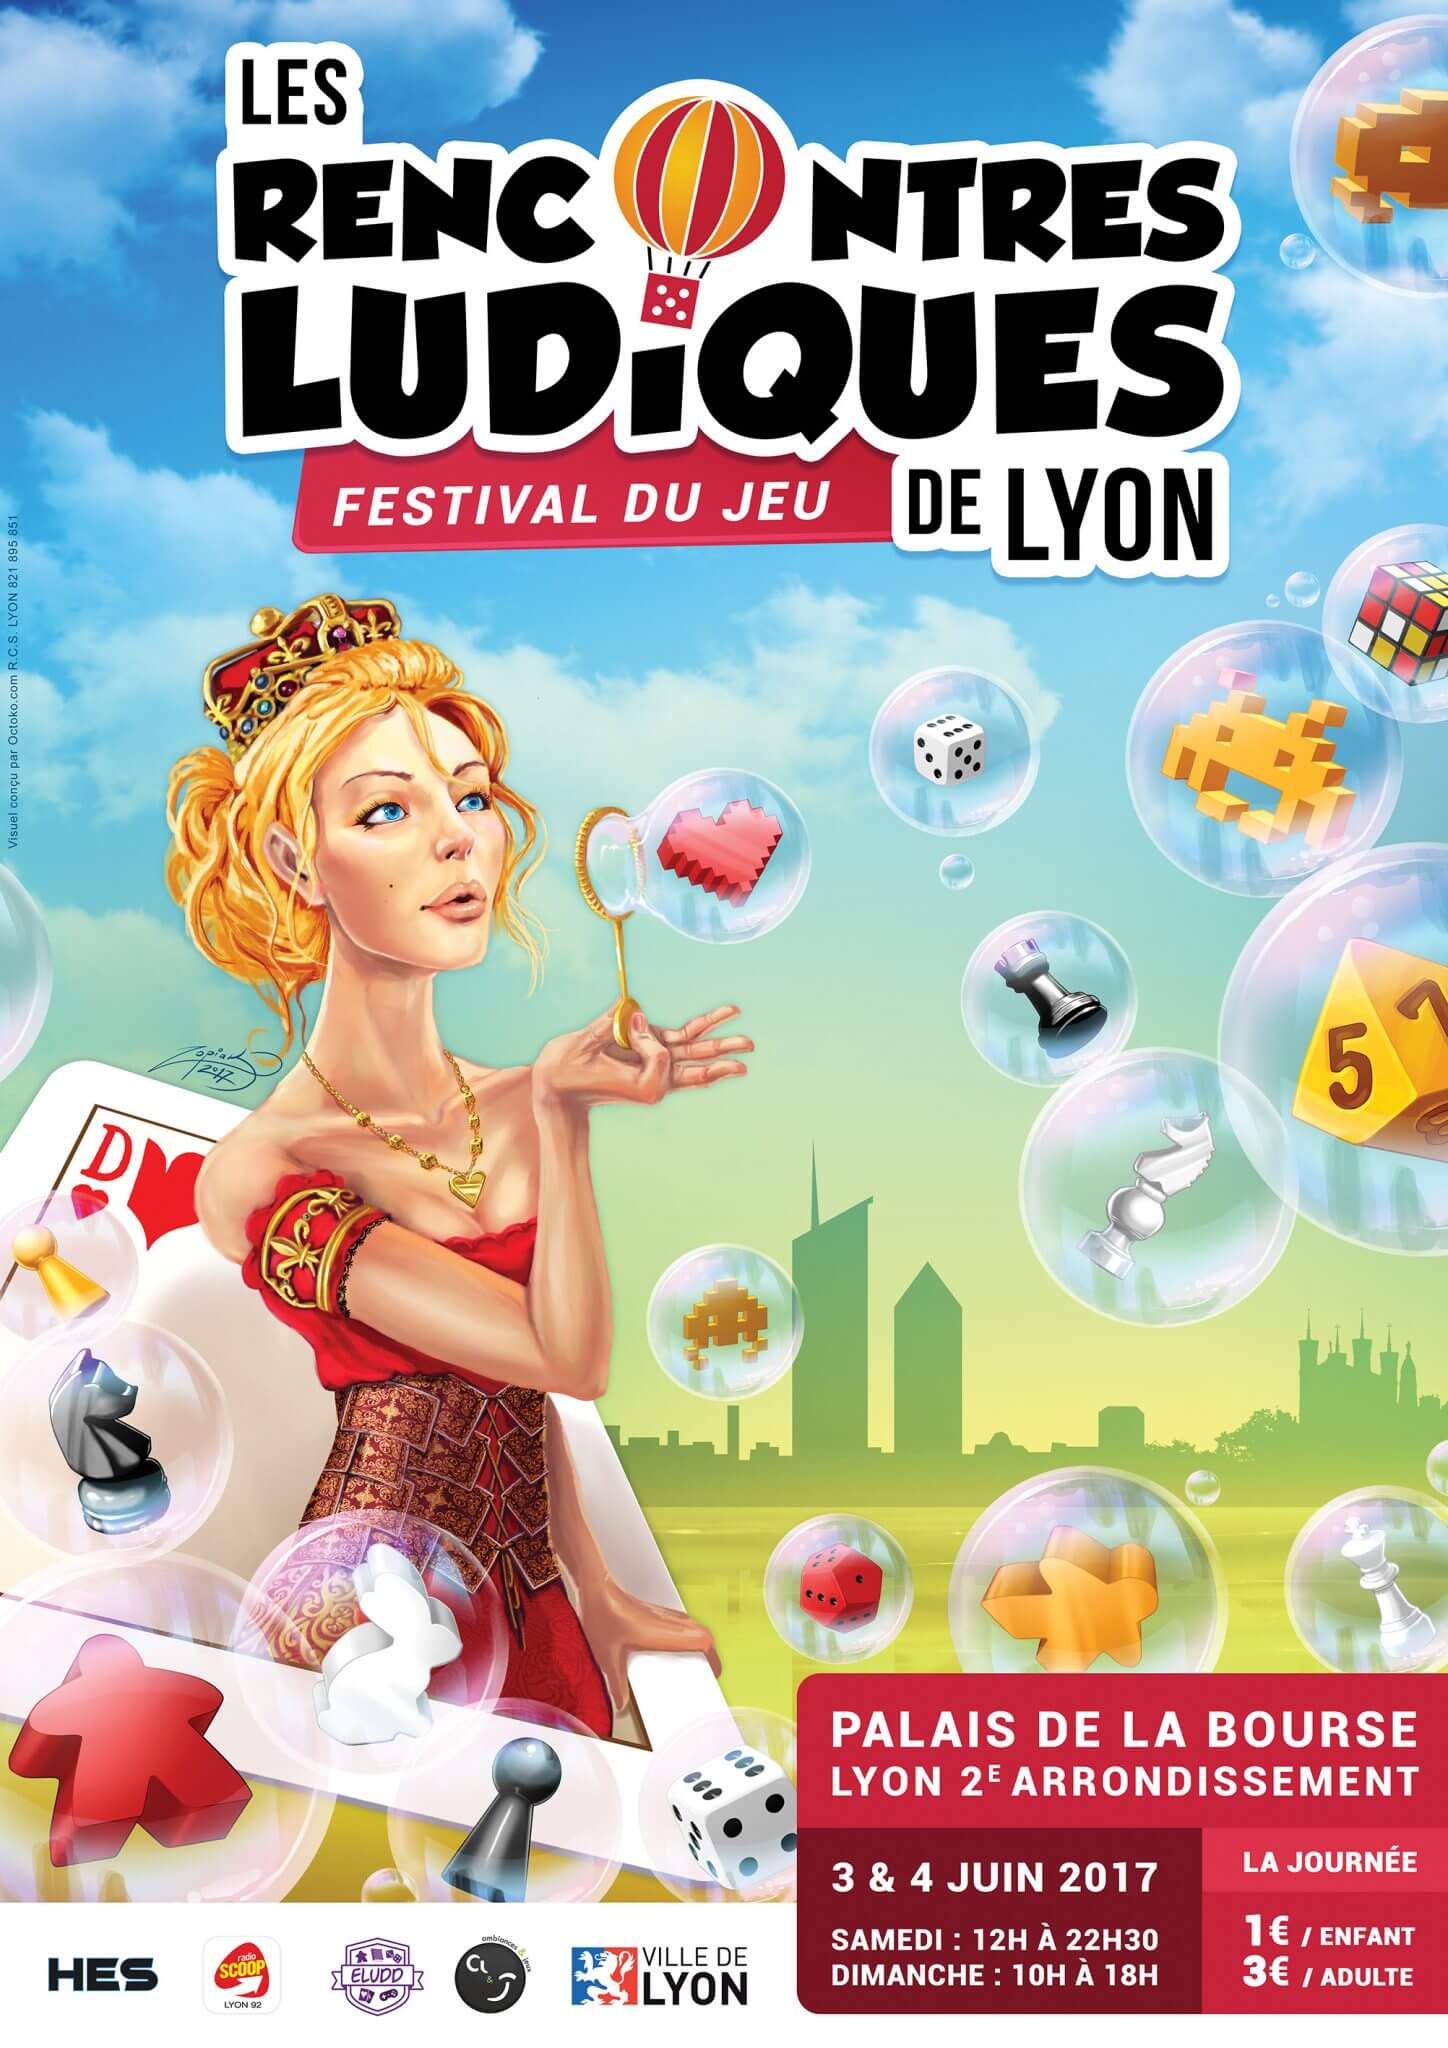 Les Rencontres Ludiques de Lyon 2017, c’est bientôt !